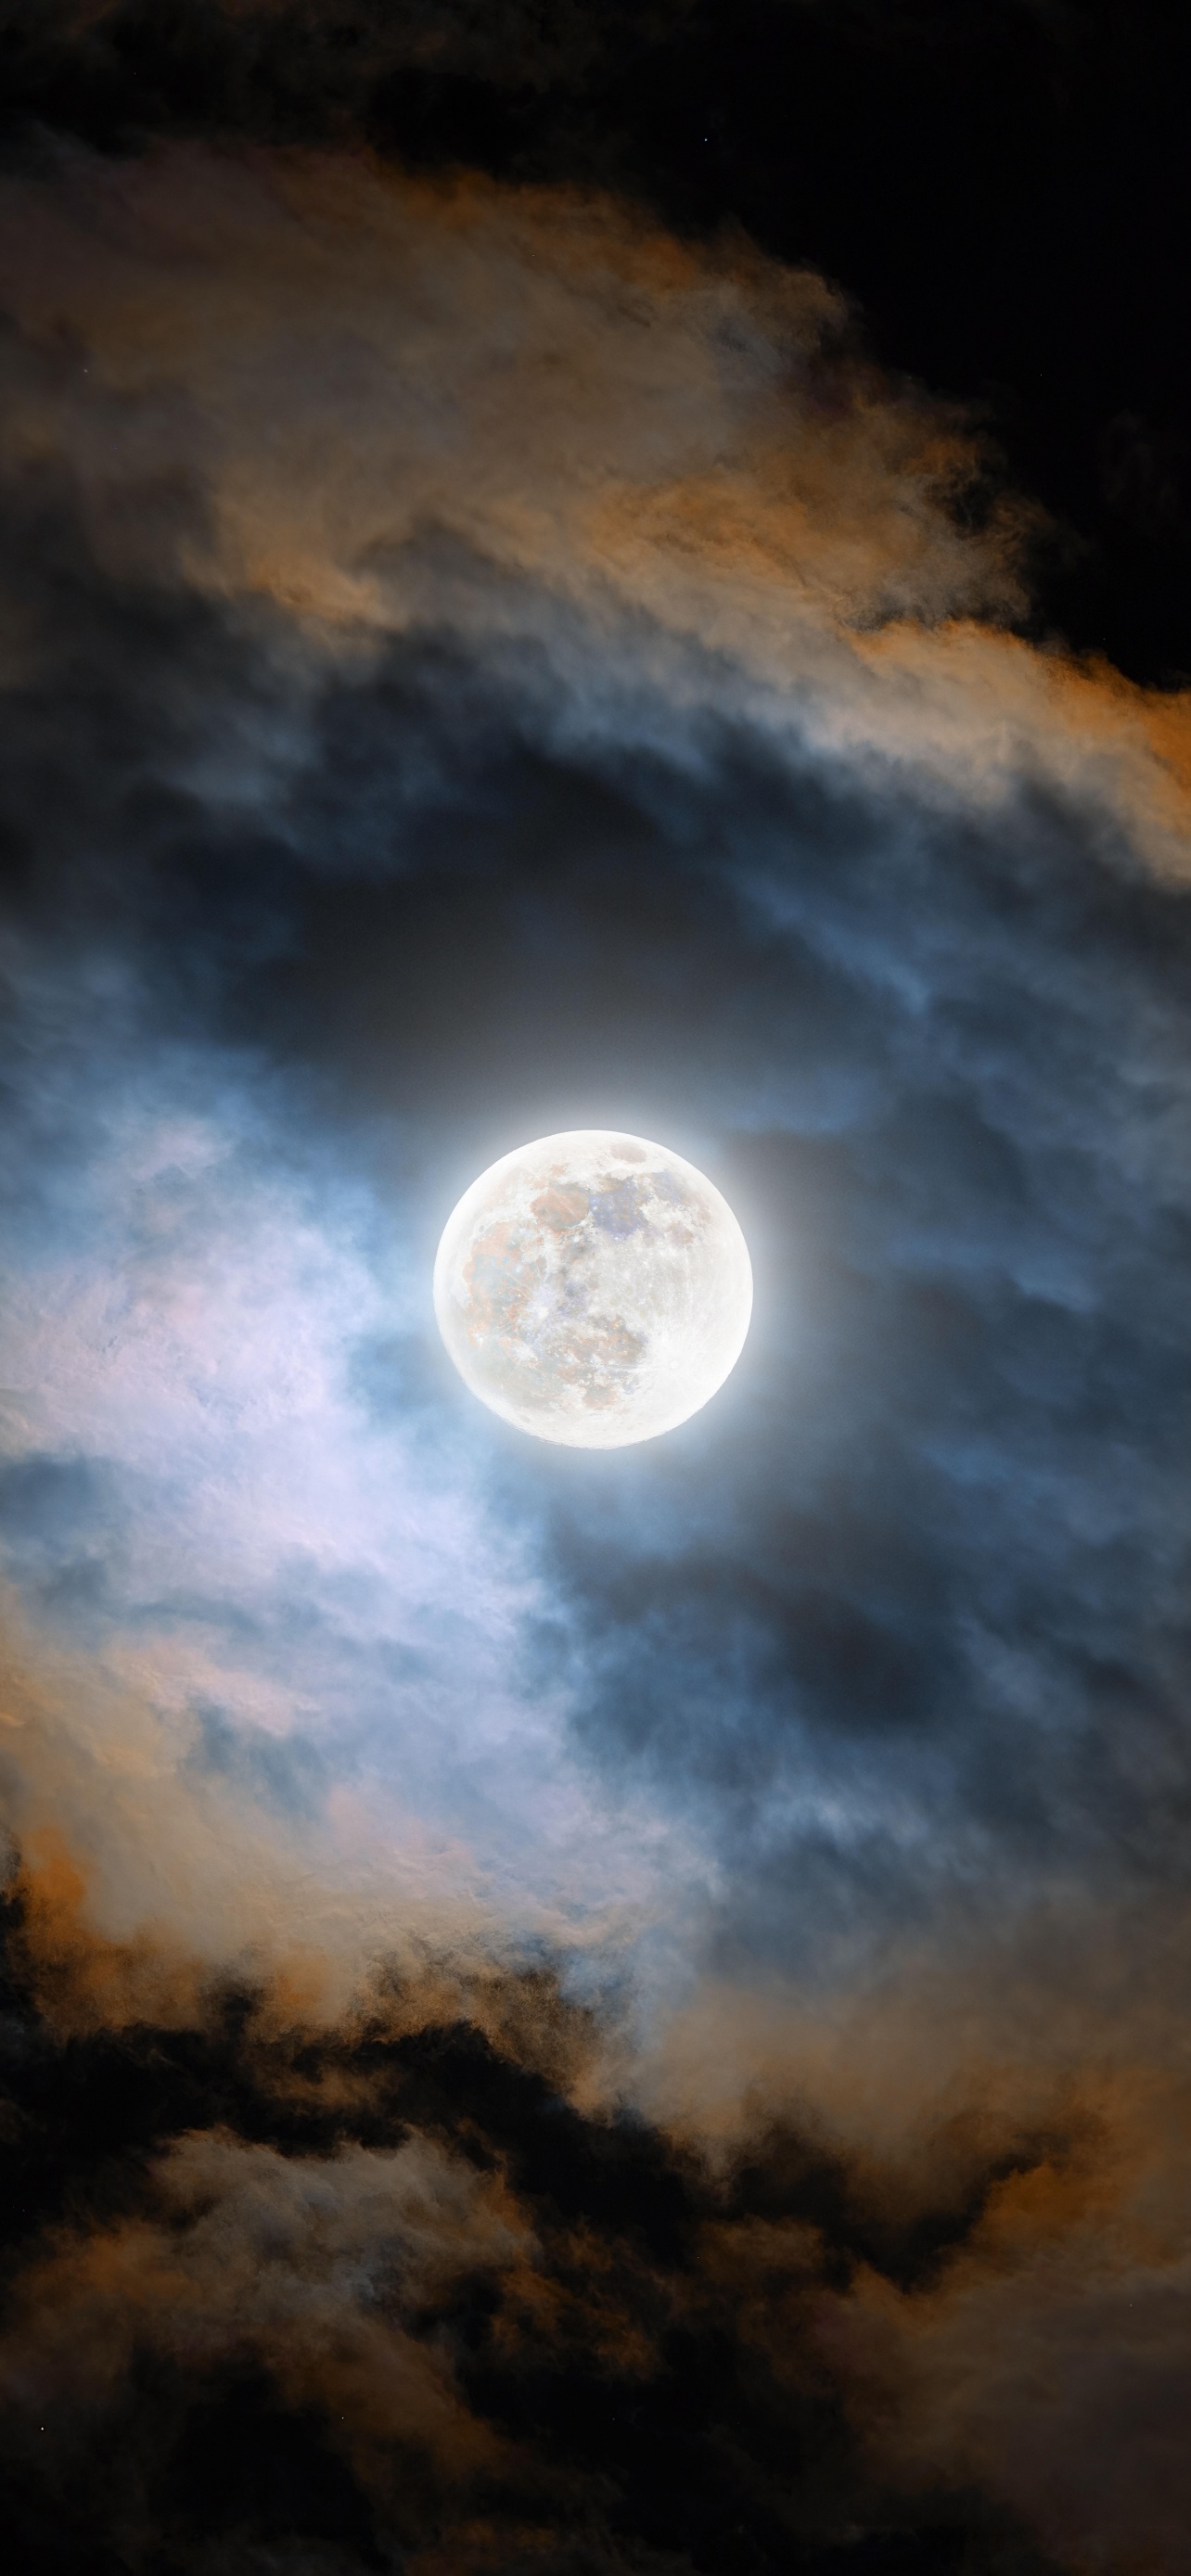 Cold Moon Wallpaper 4K, Night, Clouds, Dark, Glowing, 5K, 8K, 12K, Space